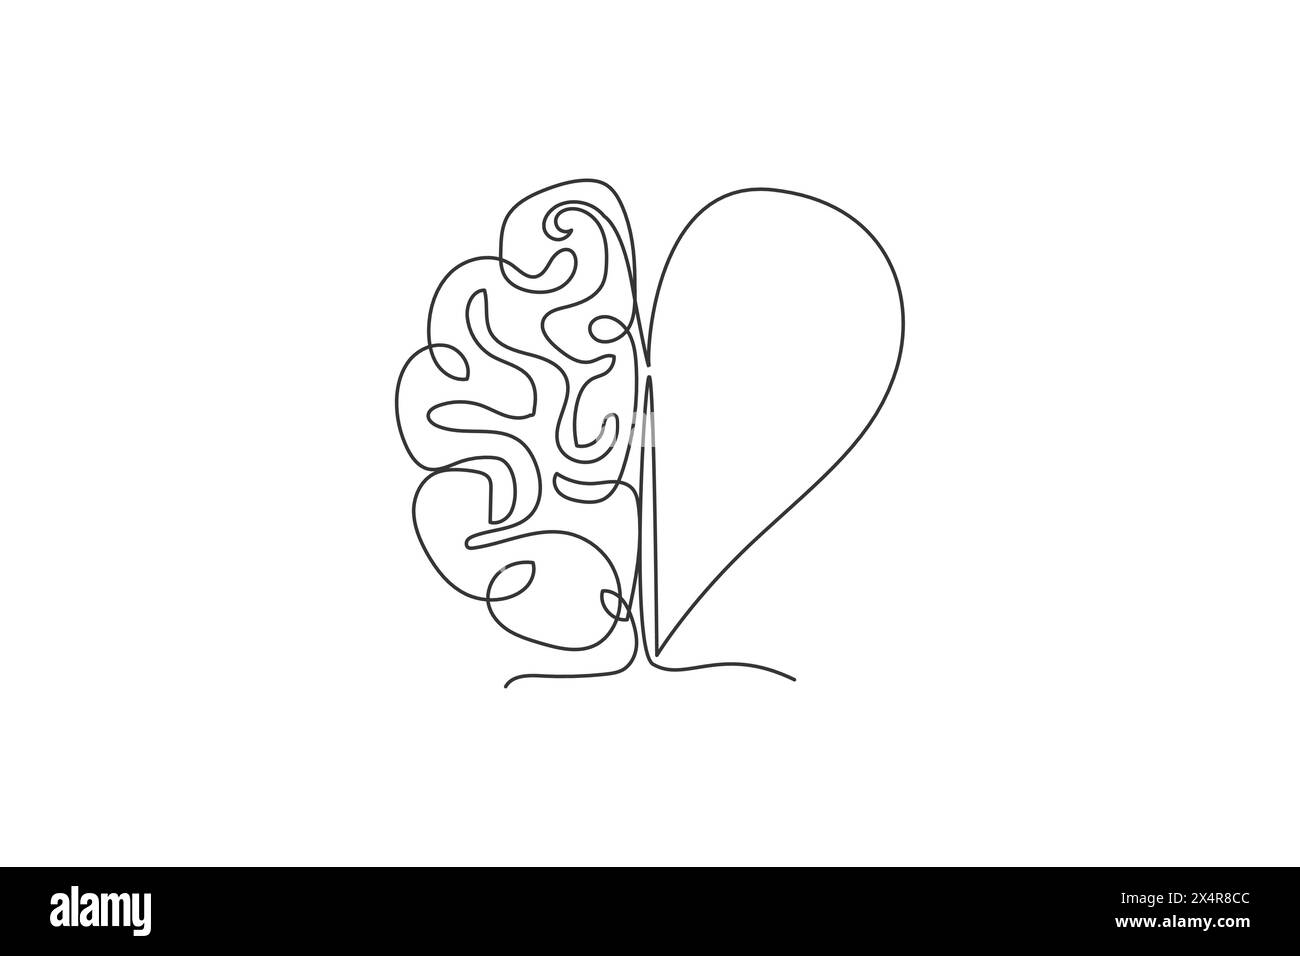 Eine durchgehende Linienzeichnung mit einem Logo in Form eines halben menschlichen Gehirns und eines Logosymbols in Form eines Herzens. Psychologische Split-Affection-Logo-Symbol-Template-Konzept. Trendig Stock Vektor